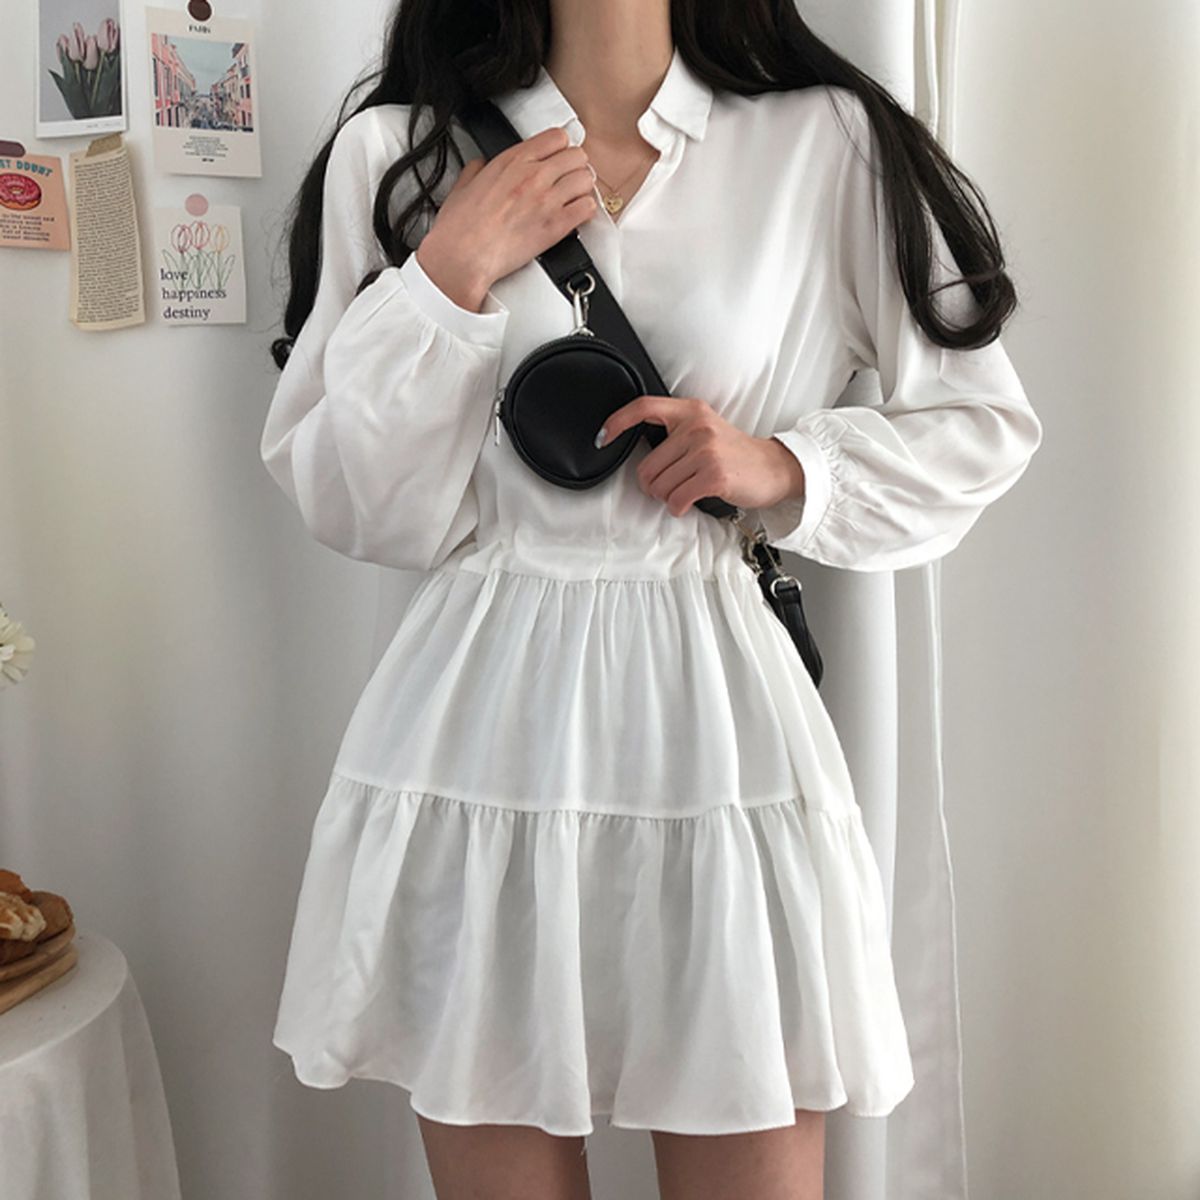 レイヤードミニワンピース - [10代・20代女性ファッション,韓国通販